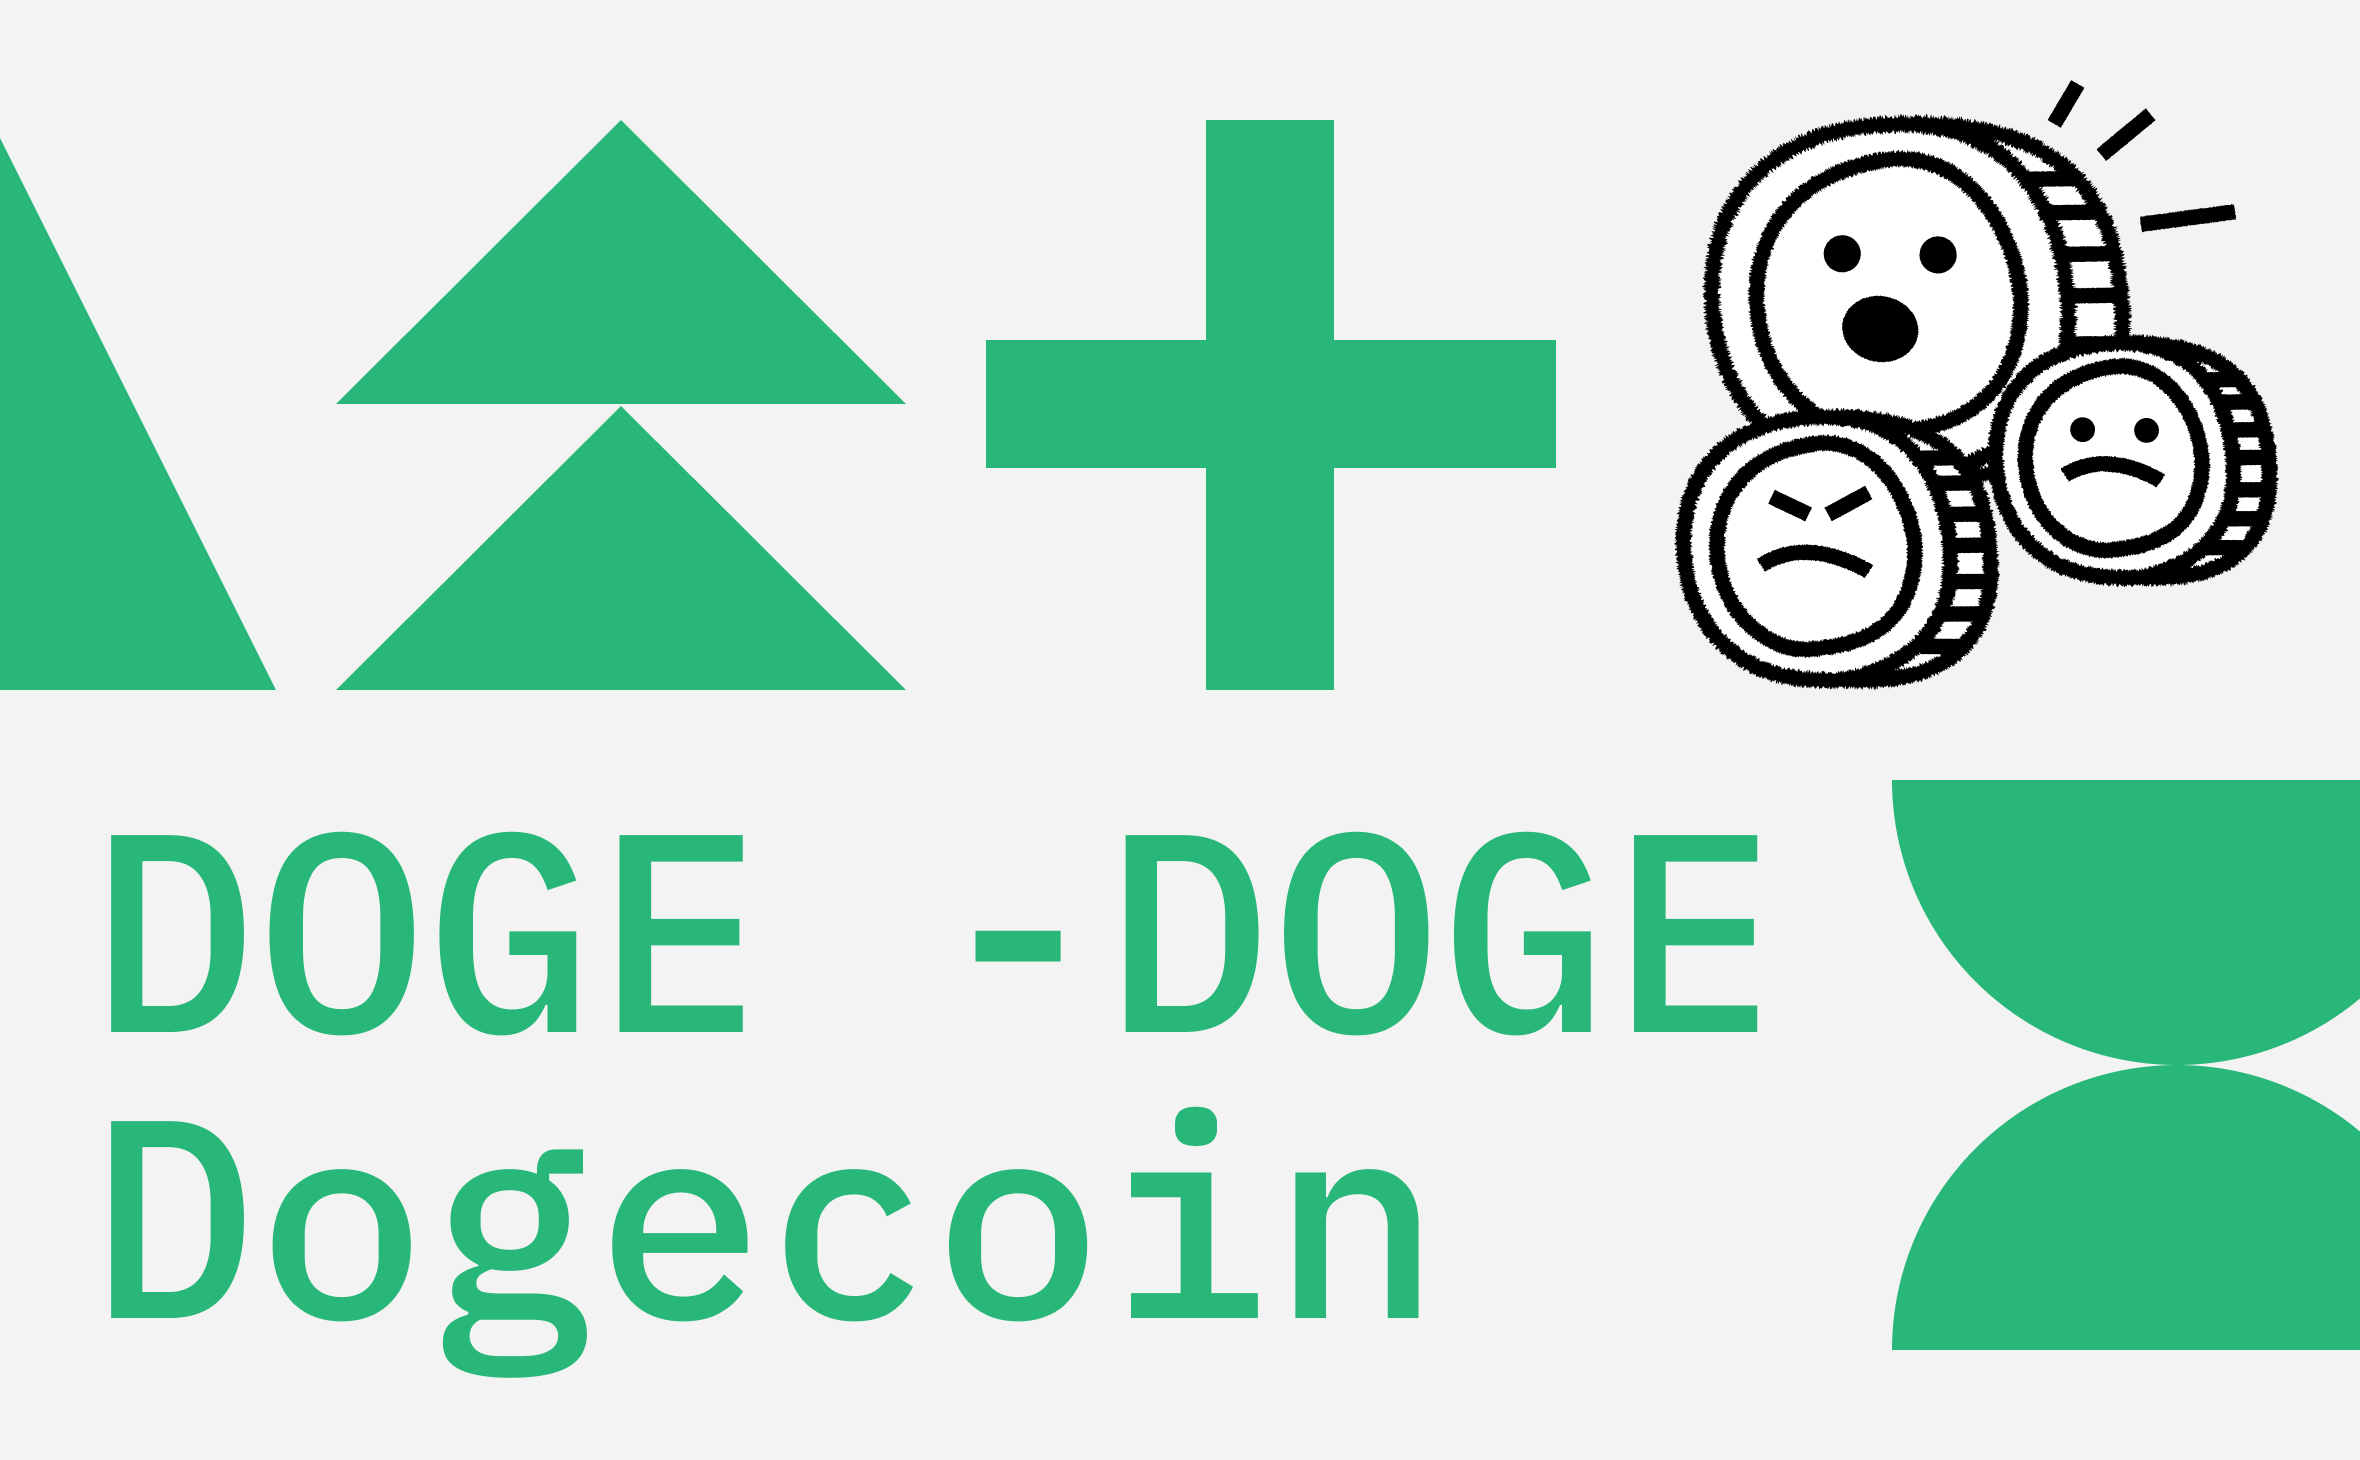 DOGFIGHT - Определение на английском языке - bitcoinhelp.fun